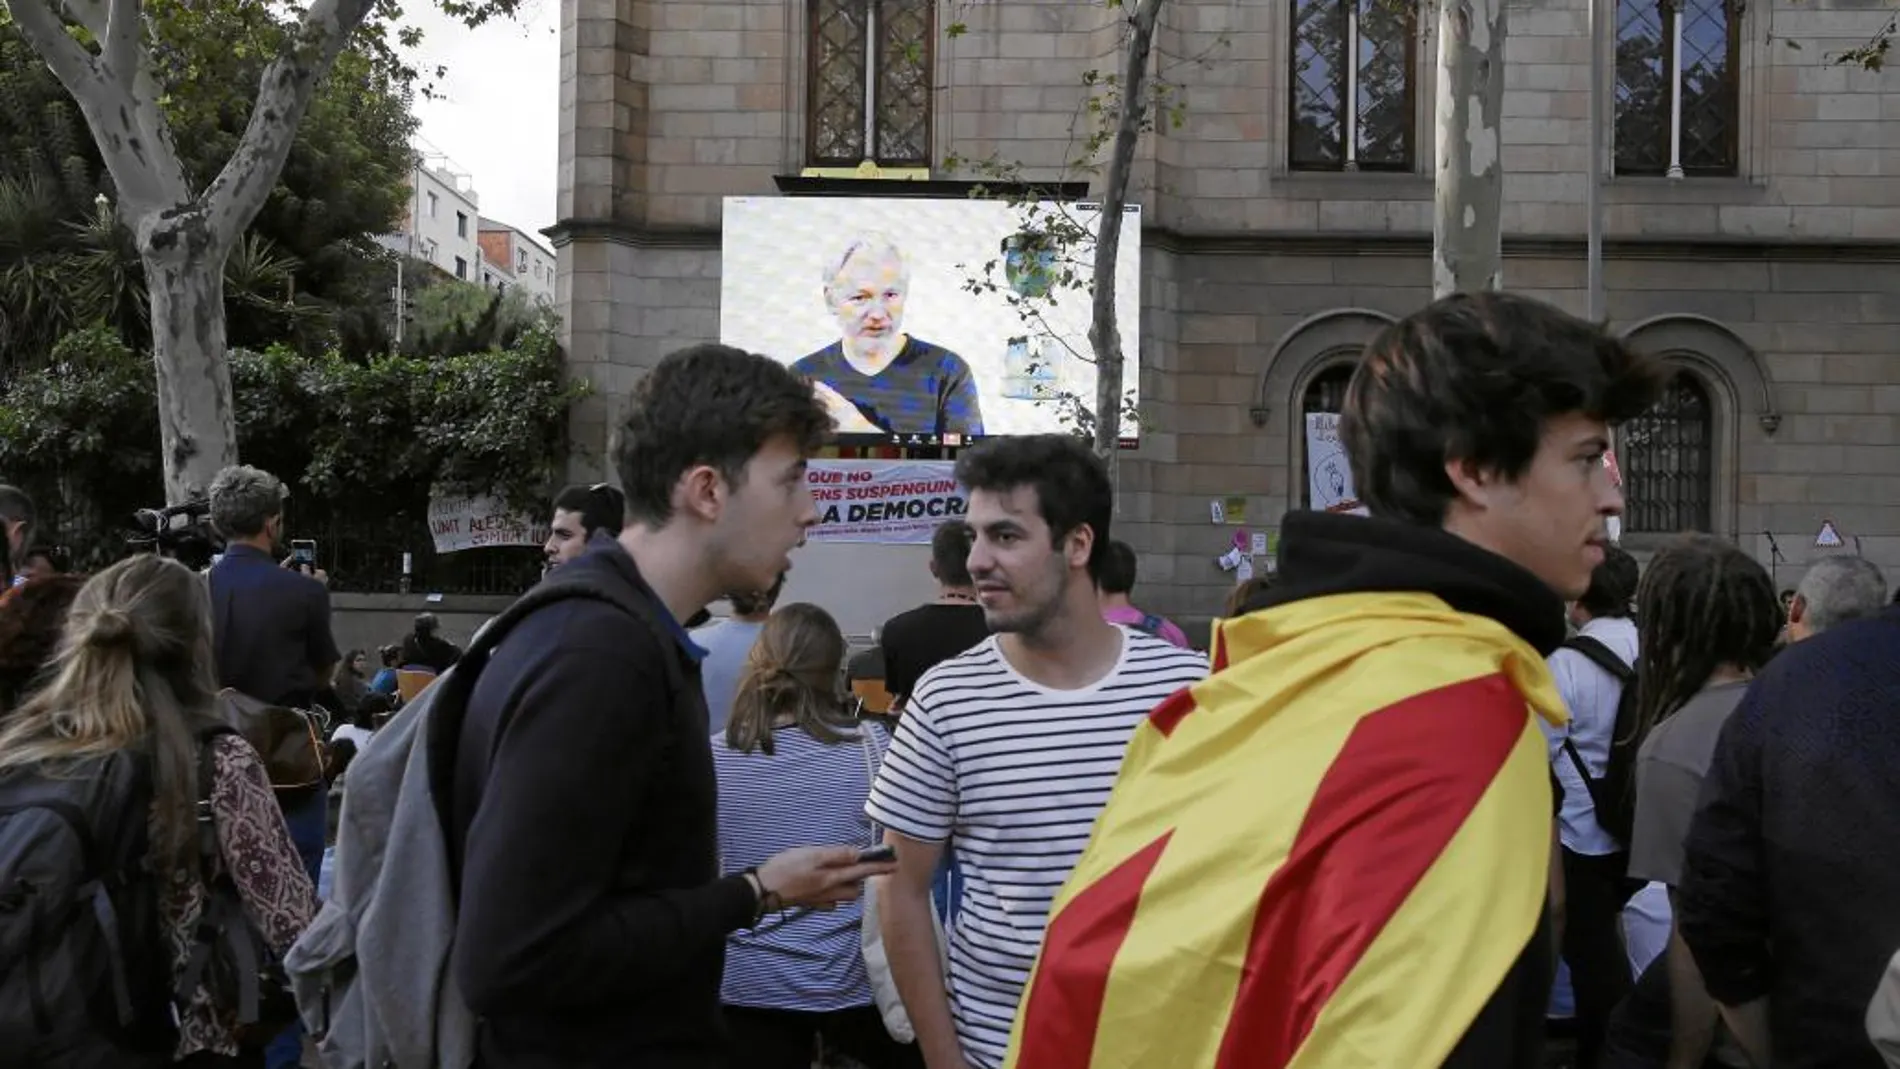 El pasado 26 de septiembre, cuatro días antes del referéndum ilegal, se retransmitió dentro de la Universidad de Barcelona una conferencia de Julian Assange en directo